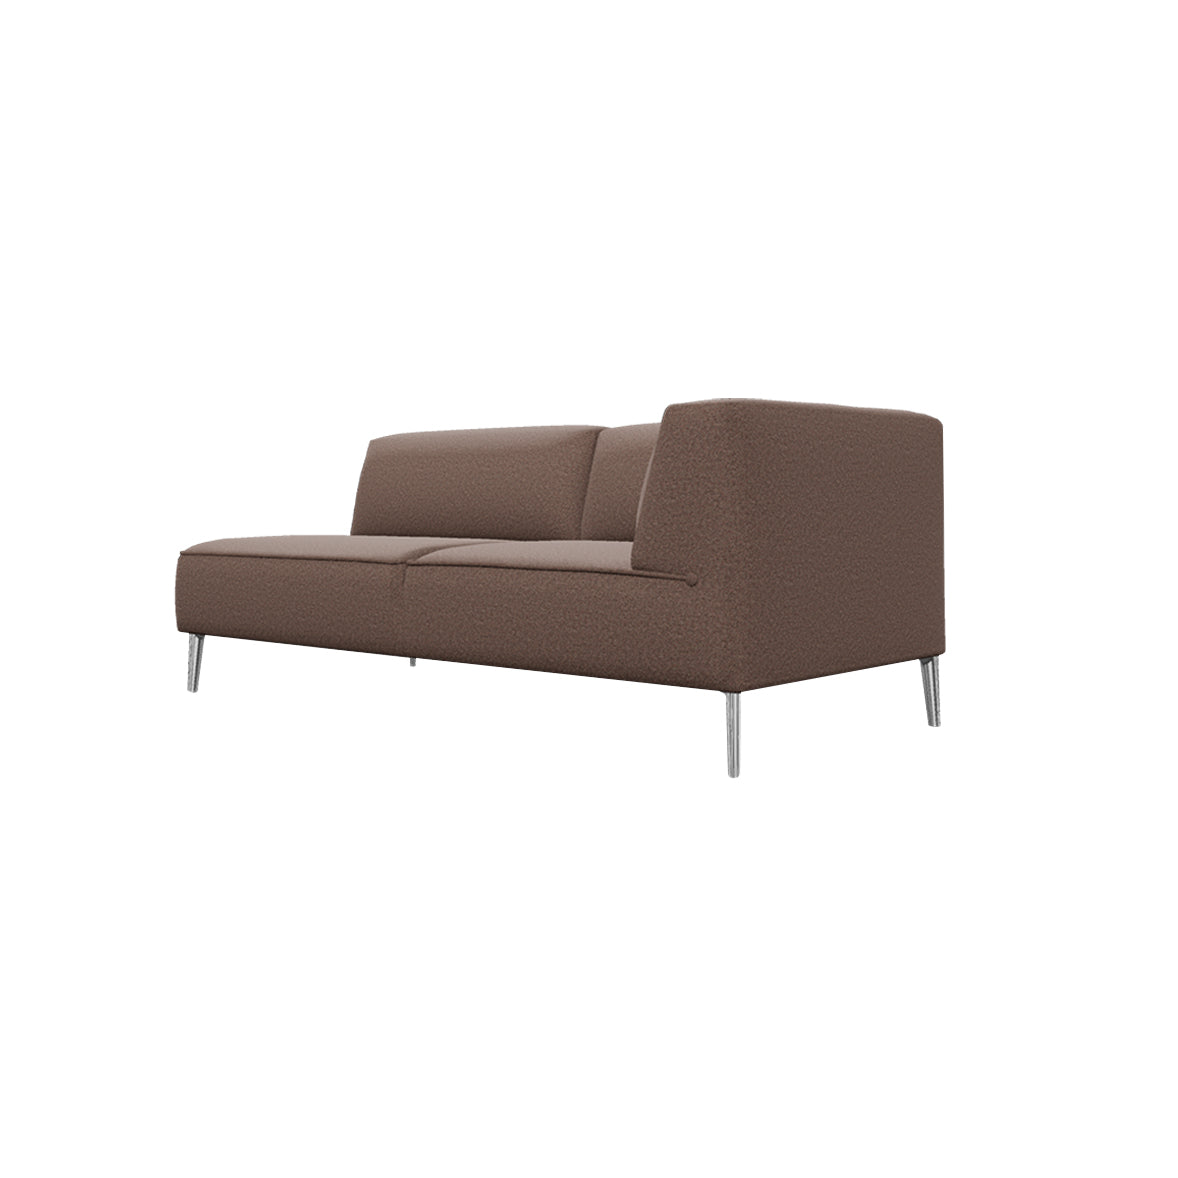 Sofa So Good Modules: Chaise Longue + Right